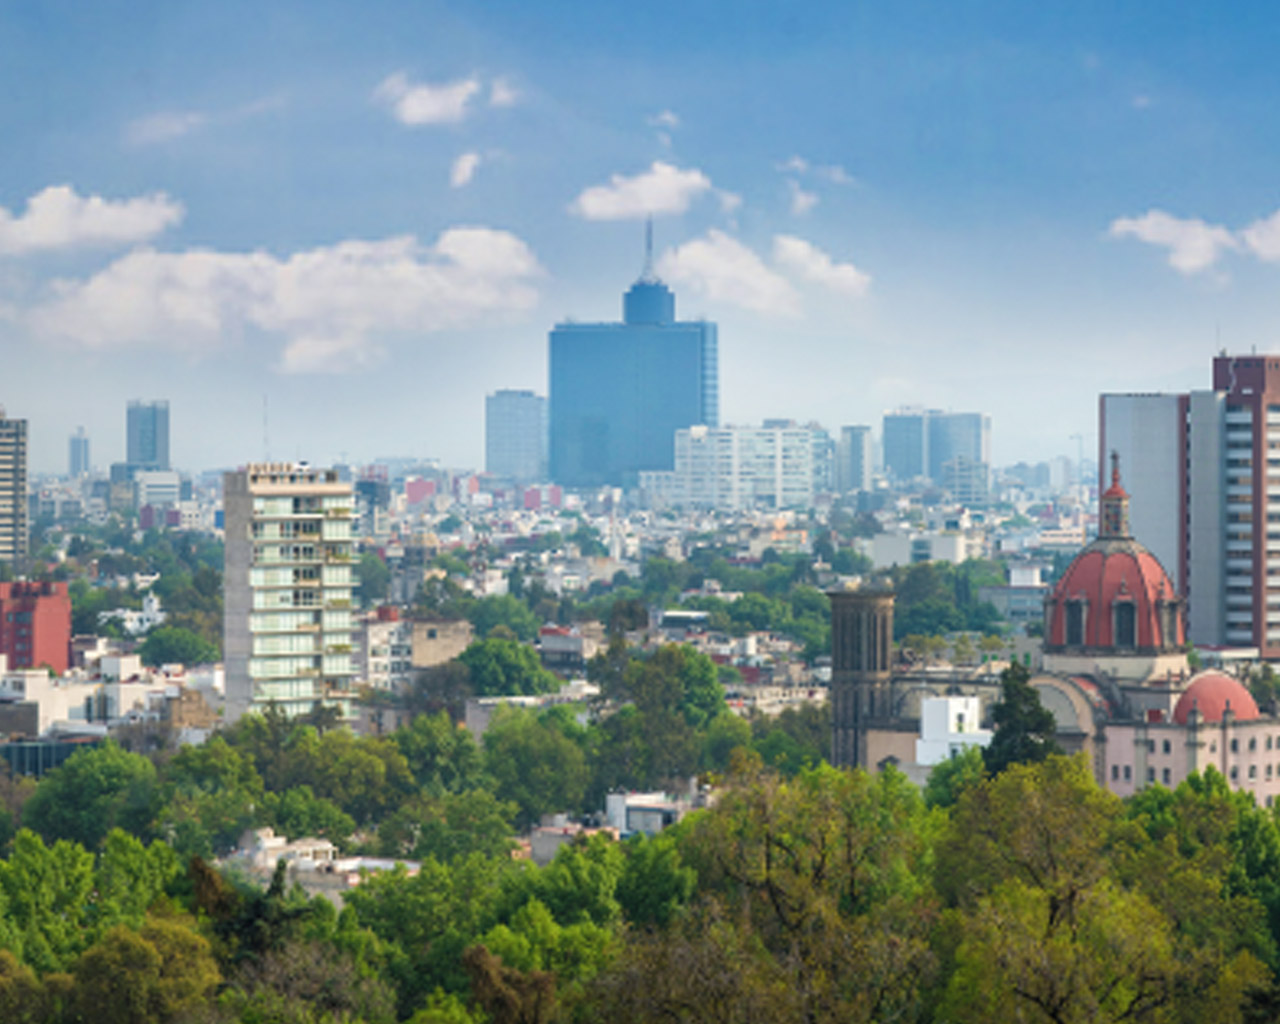 Vista de la ciudad de México con muchos árboles y los edificios más altos sobre el horizonte.